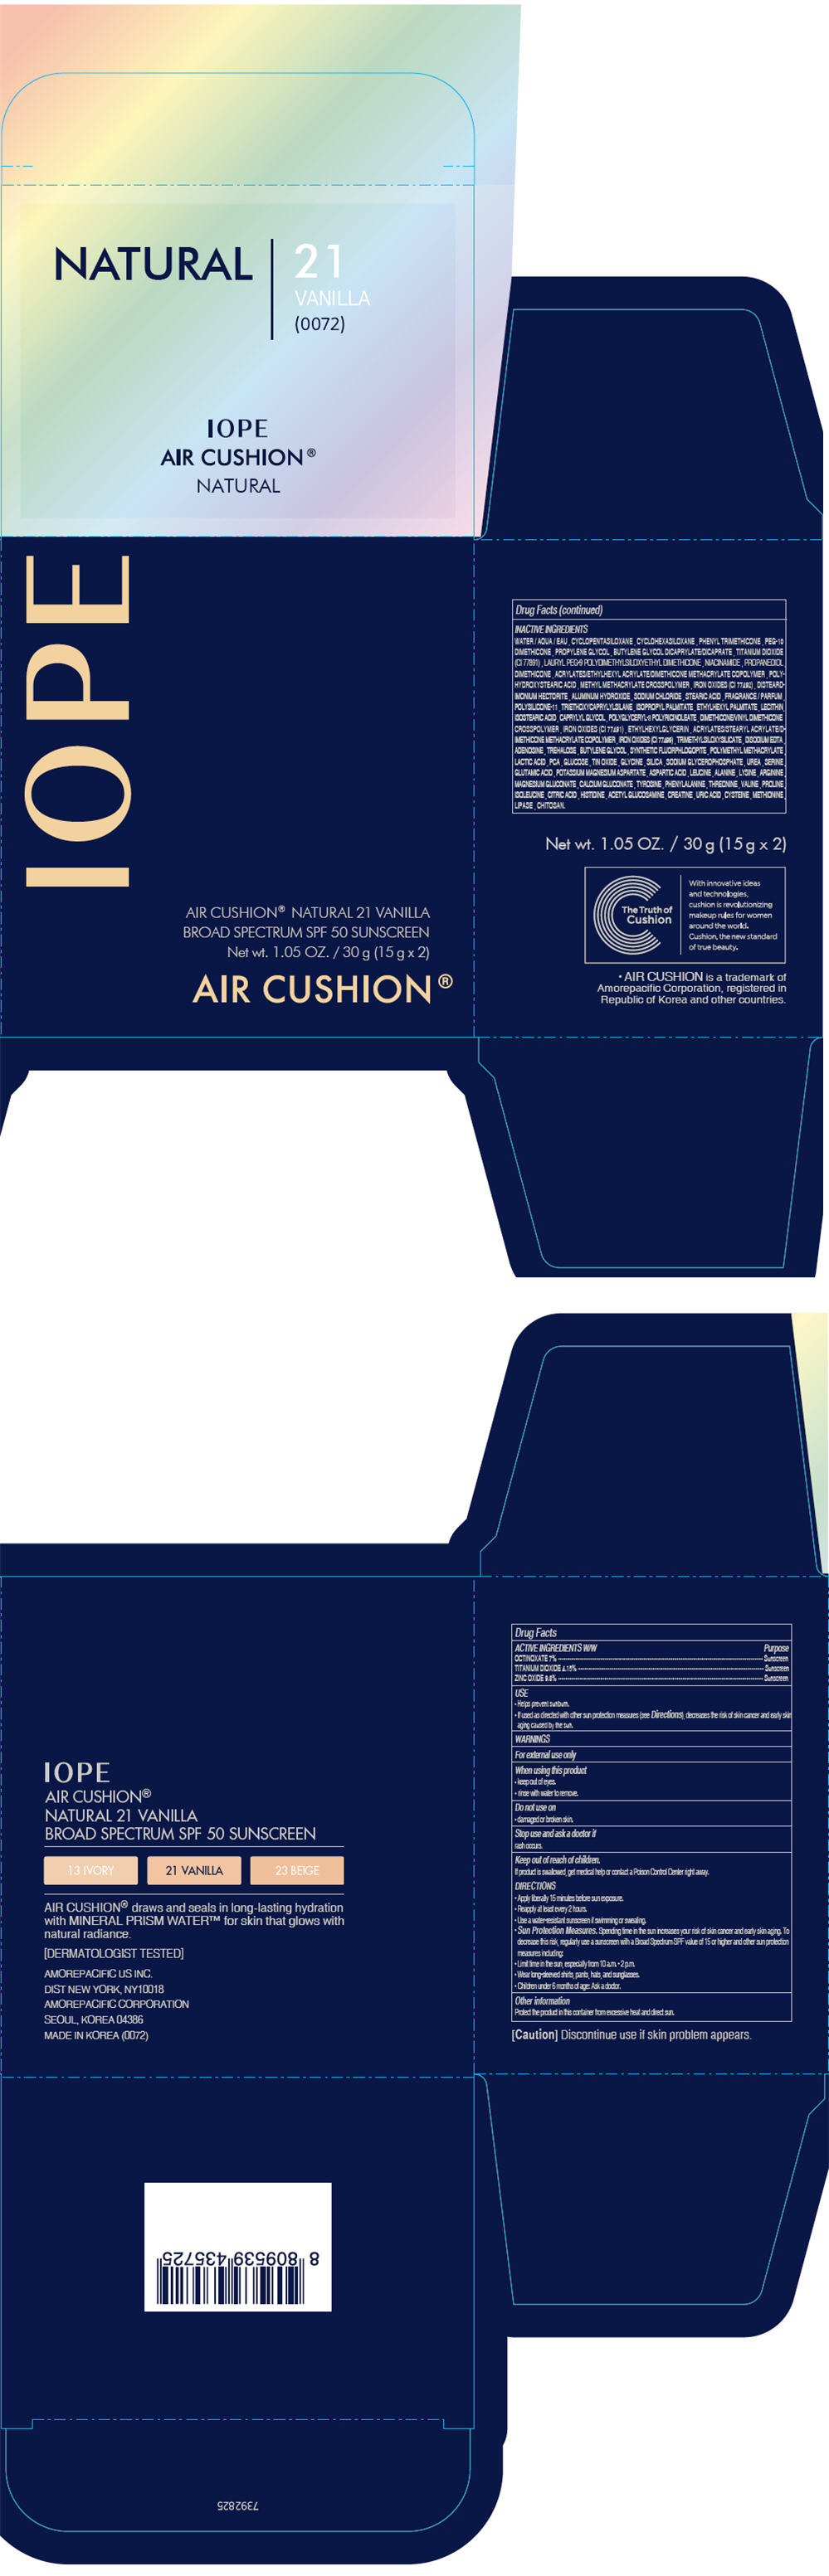 Principal Display Panel - 30 g Container Carton - 21 Vanilla